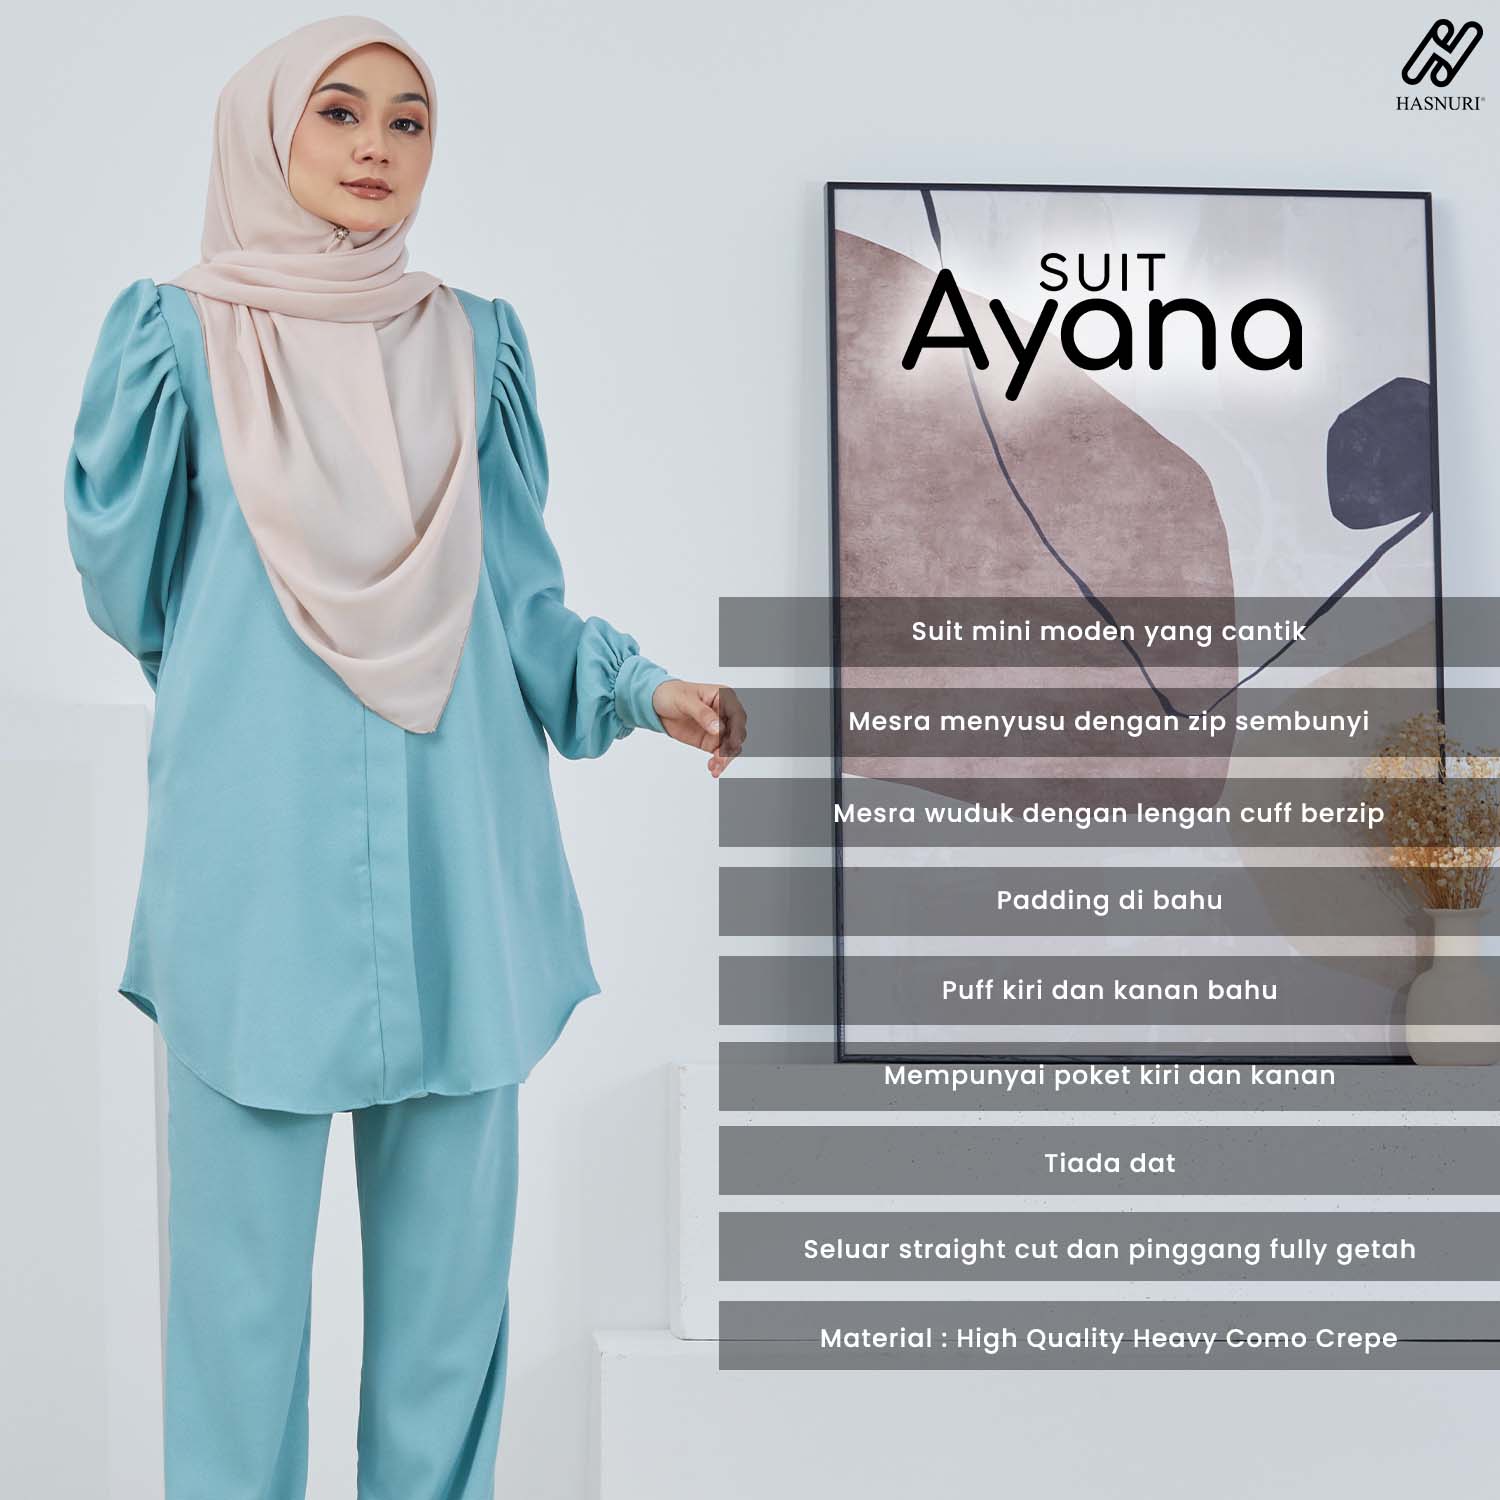 Suit Ayana - Dark Orange